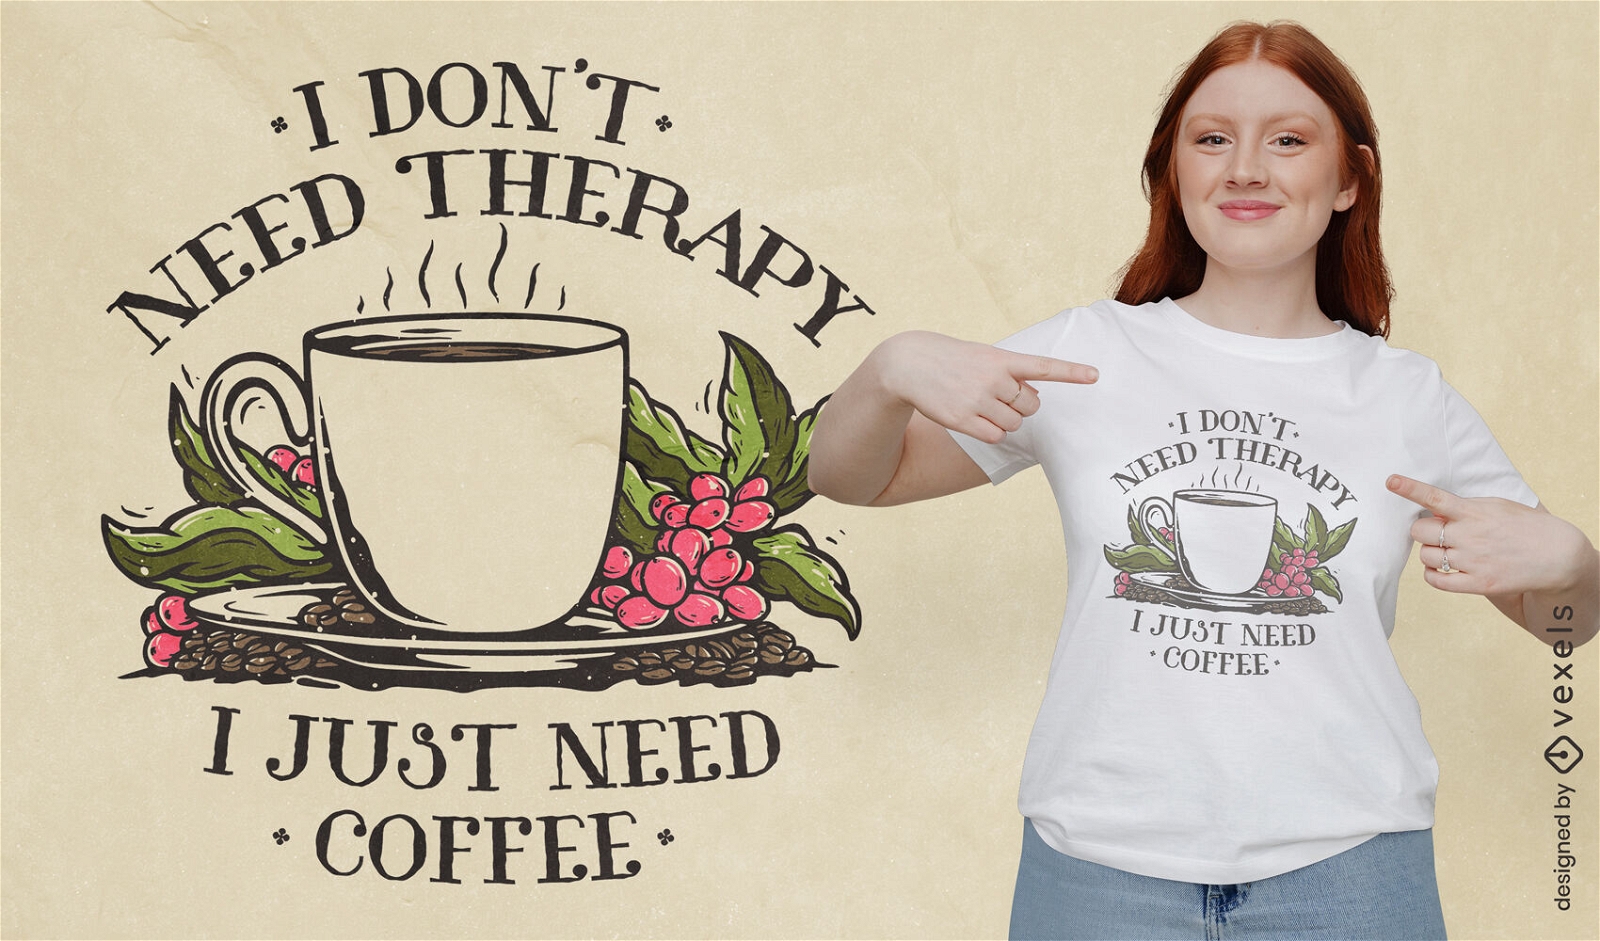 Kaffeegetr?nk und Trauben-T-Shirt-Design